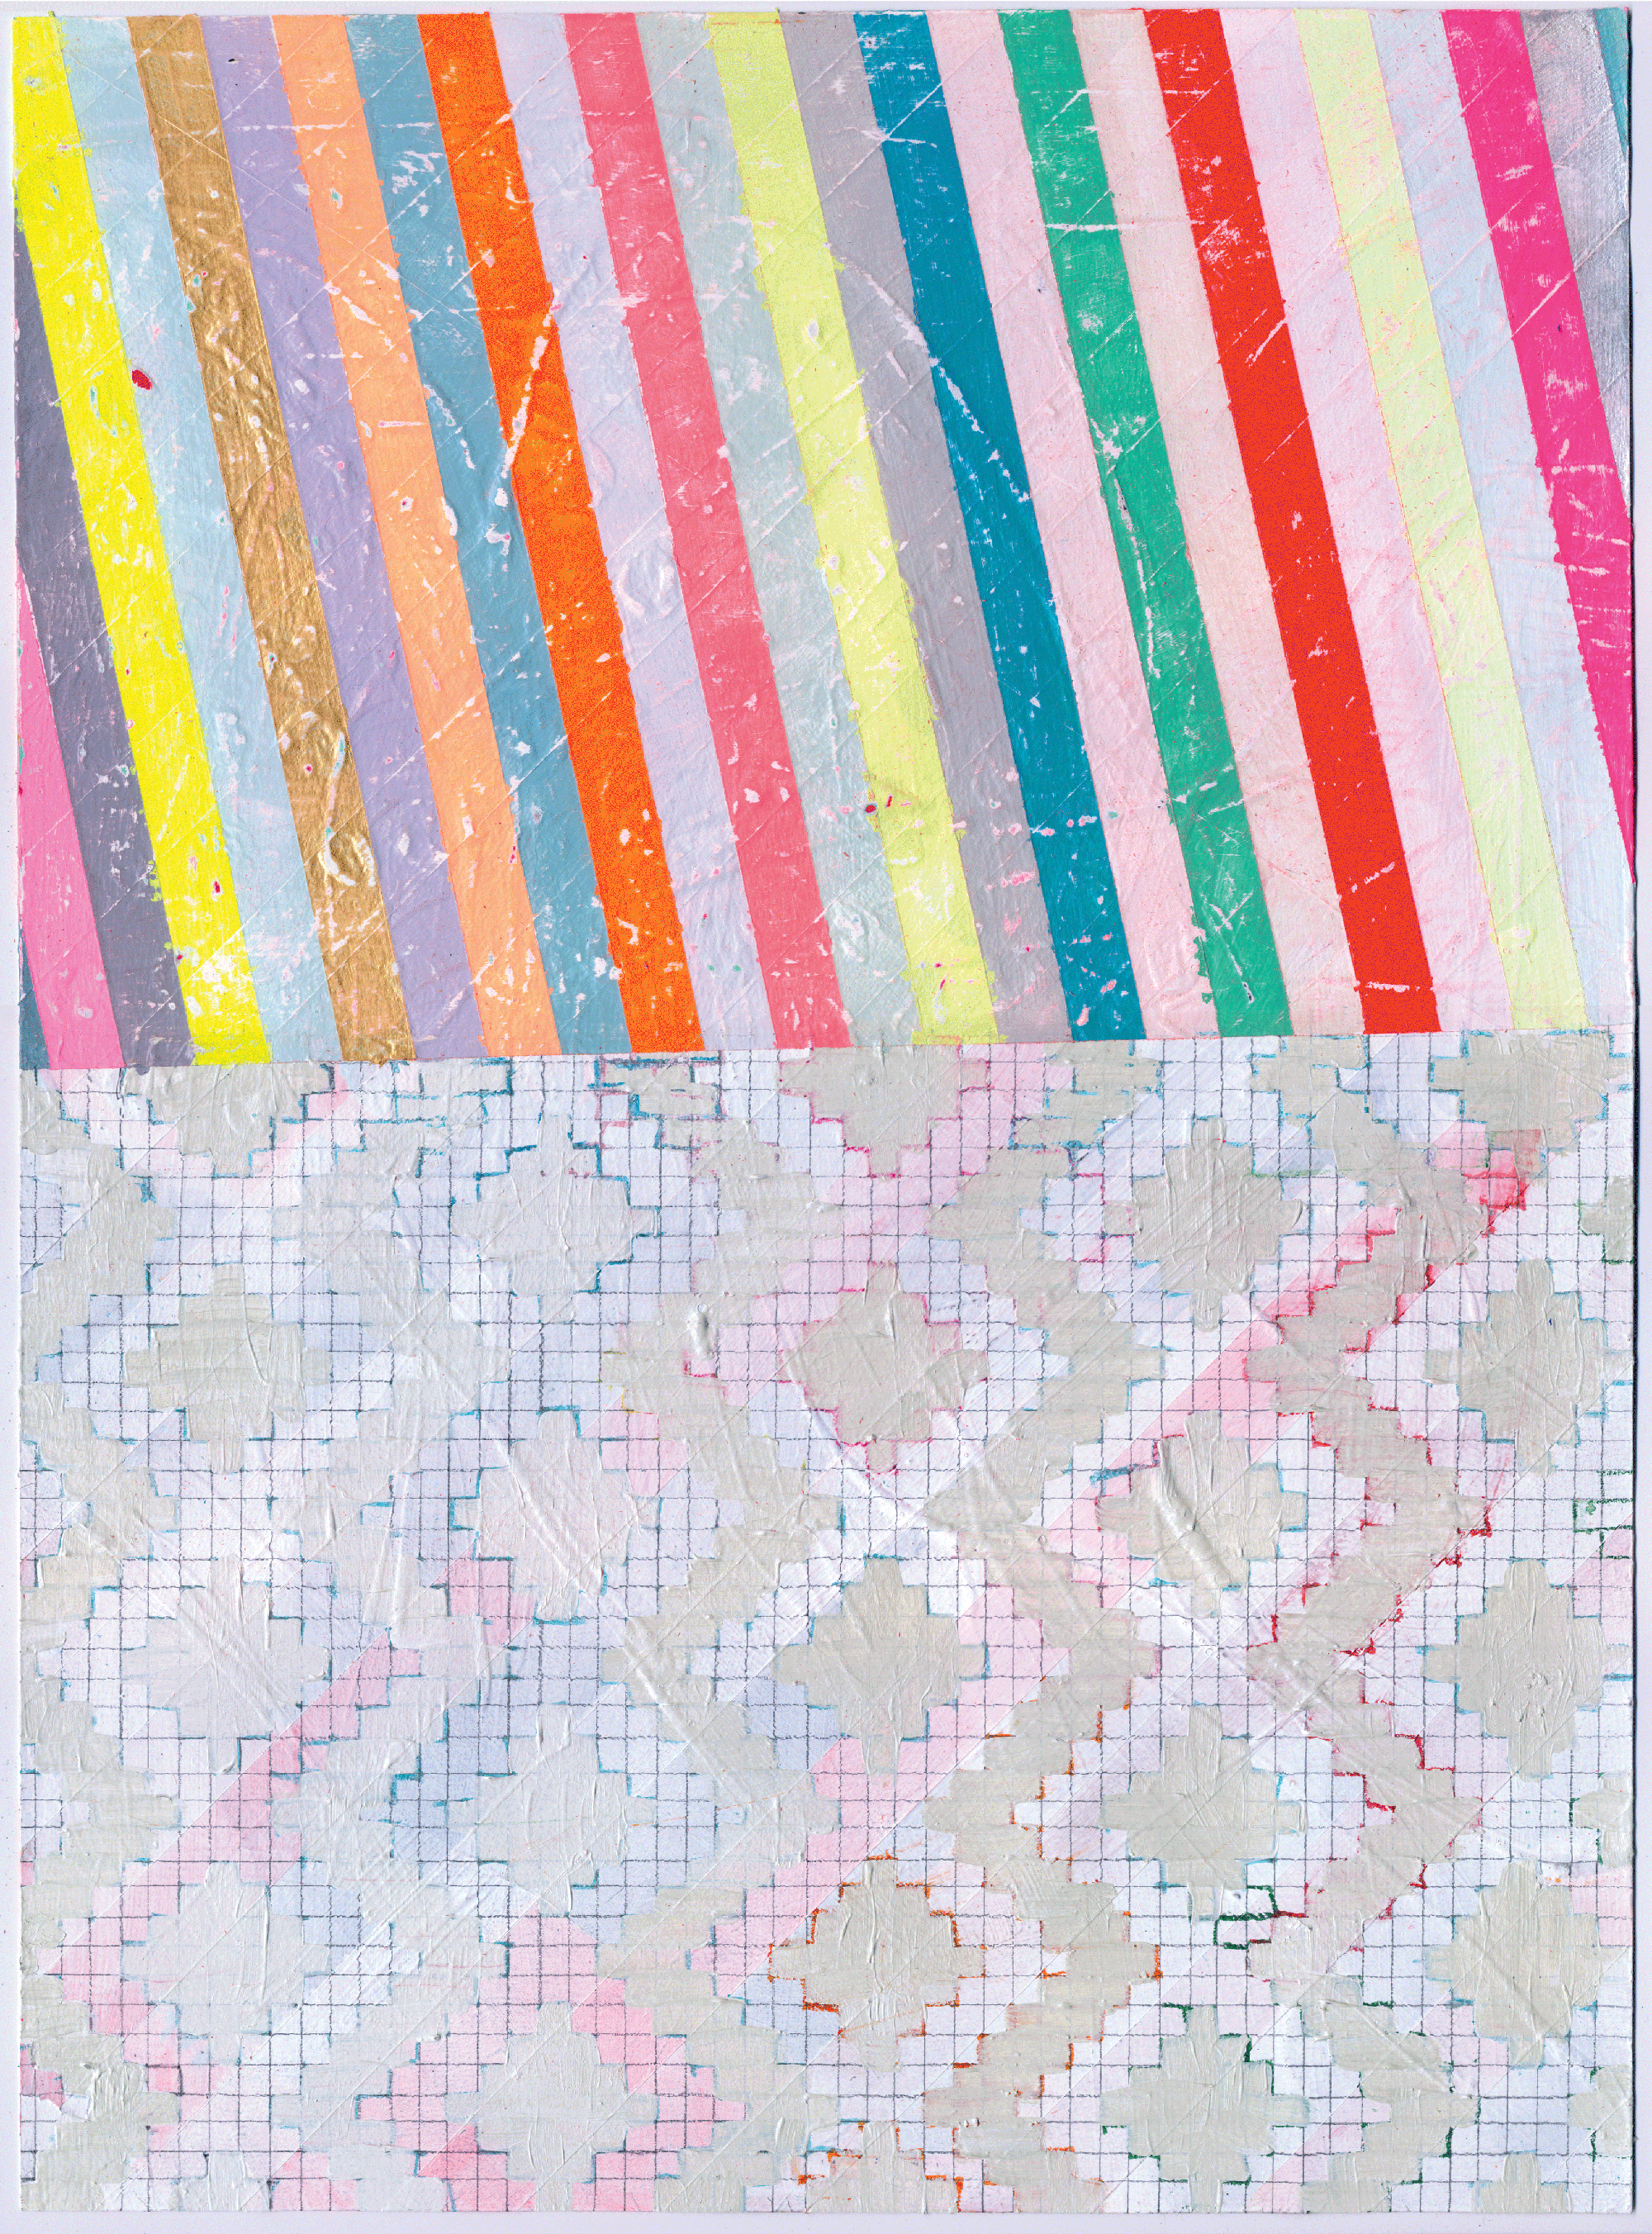  NY1518, 11" X 15", acrylic on paper, 2015 